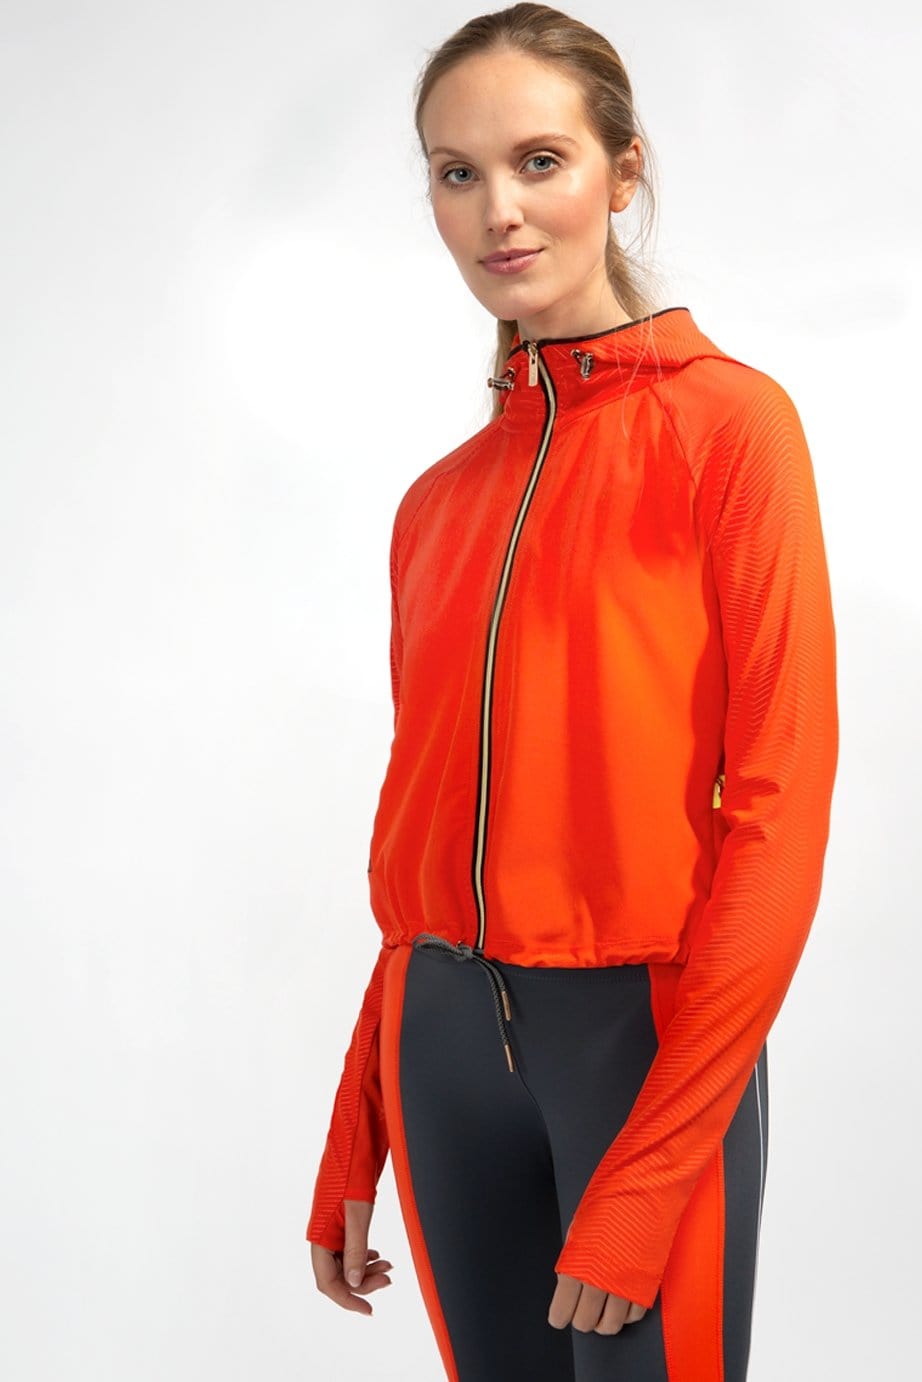 XRT orange sport jacket for women